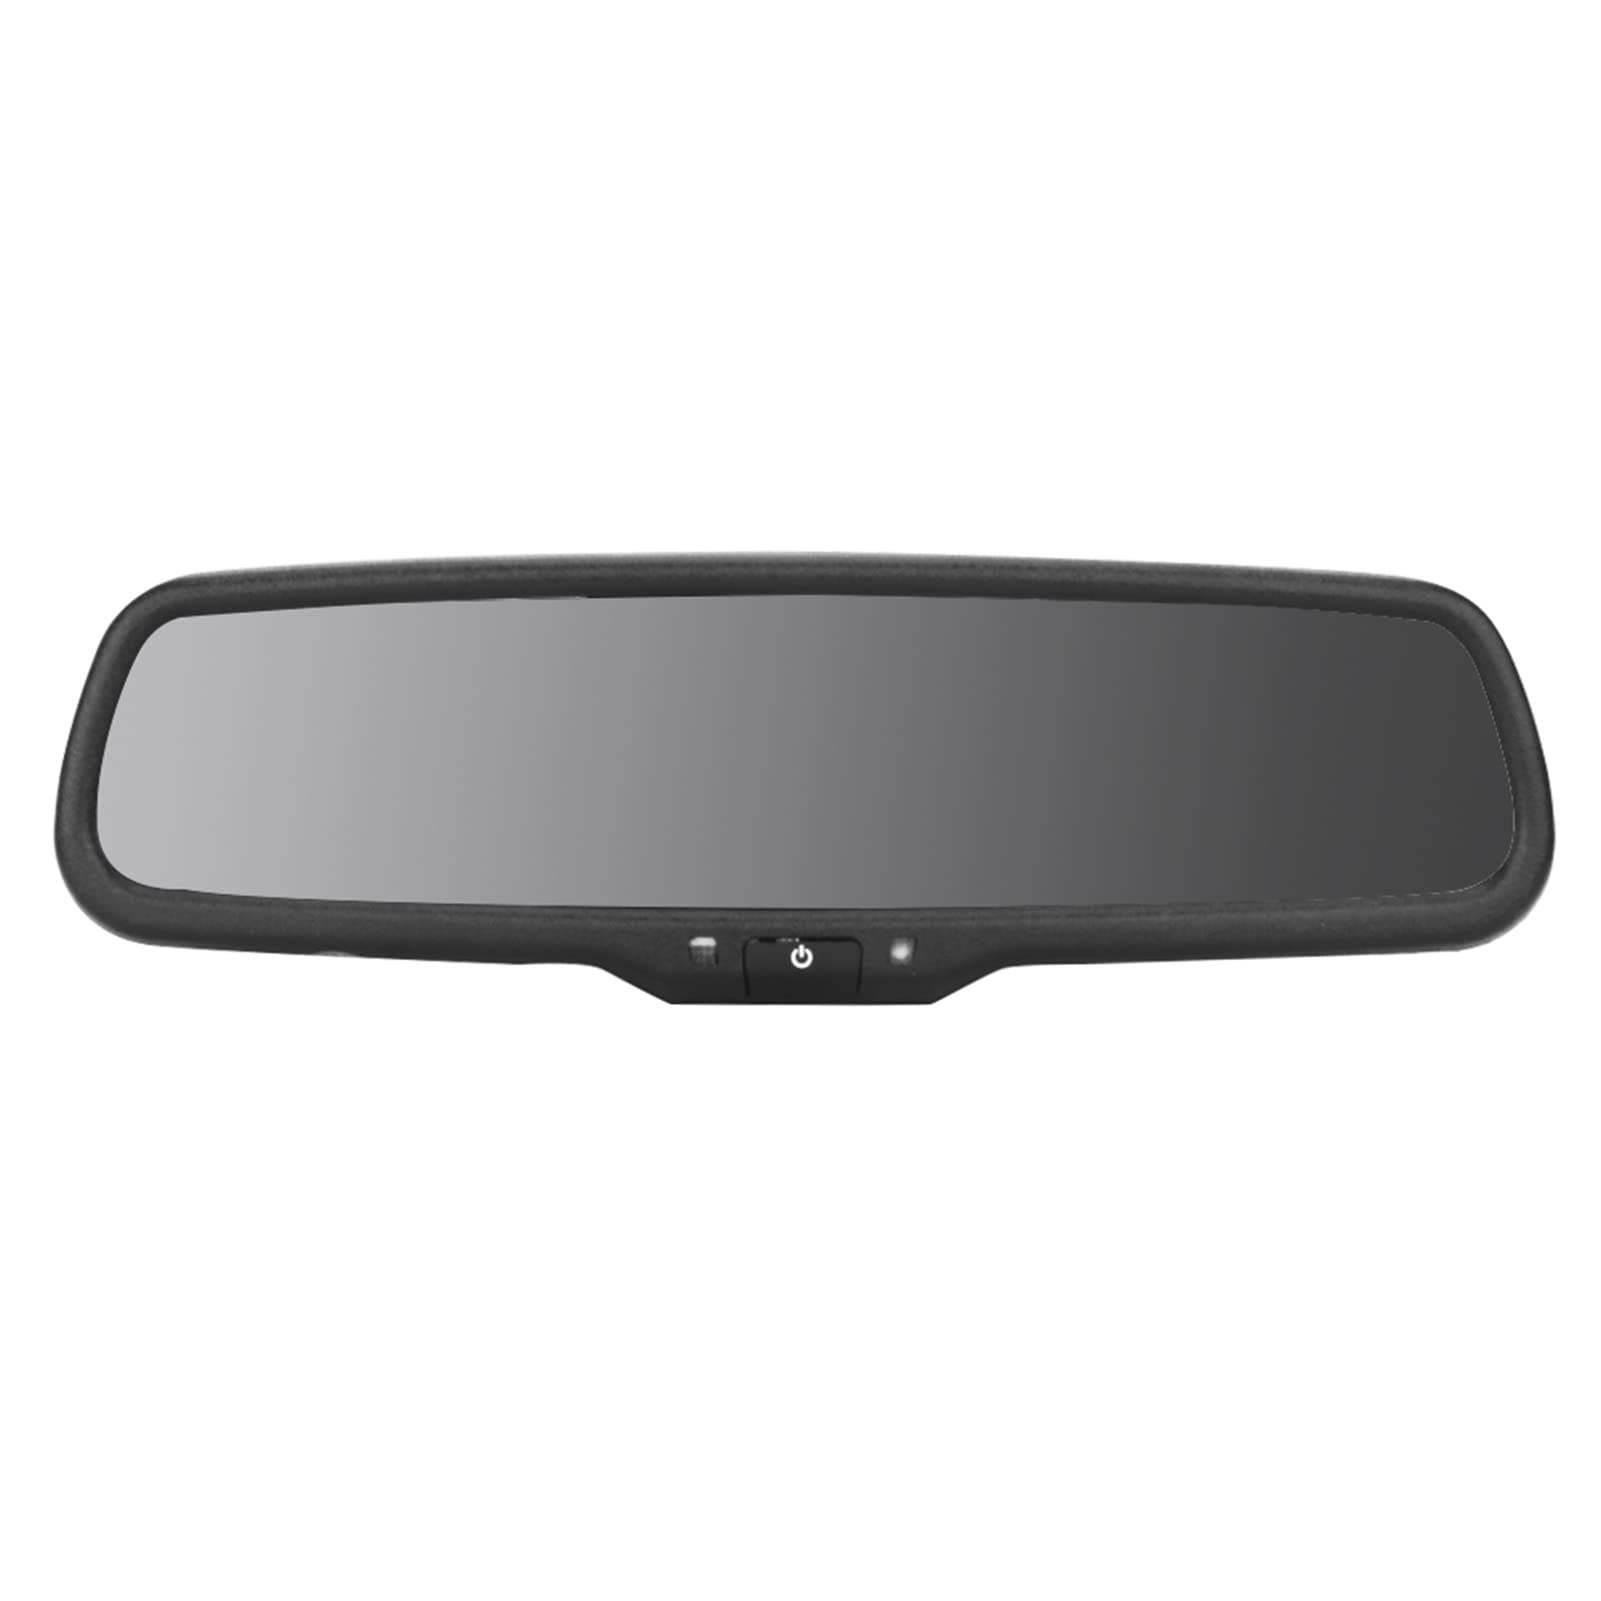 Akozon Auto-Rückspiegelmonitor, 4,3-Zoll-Auto-Rückspiegel-Monitor mit Automatischer Dimmung und Halterung Schwarzer Rückspiegelmonitor für Autos, AKOZONGS82T05F3N von Akozon